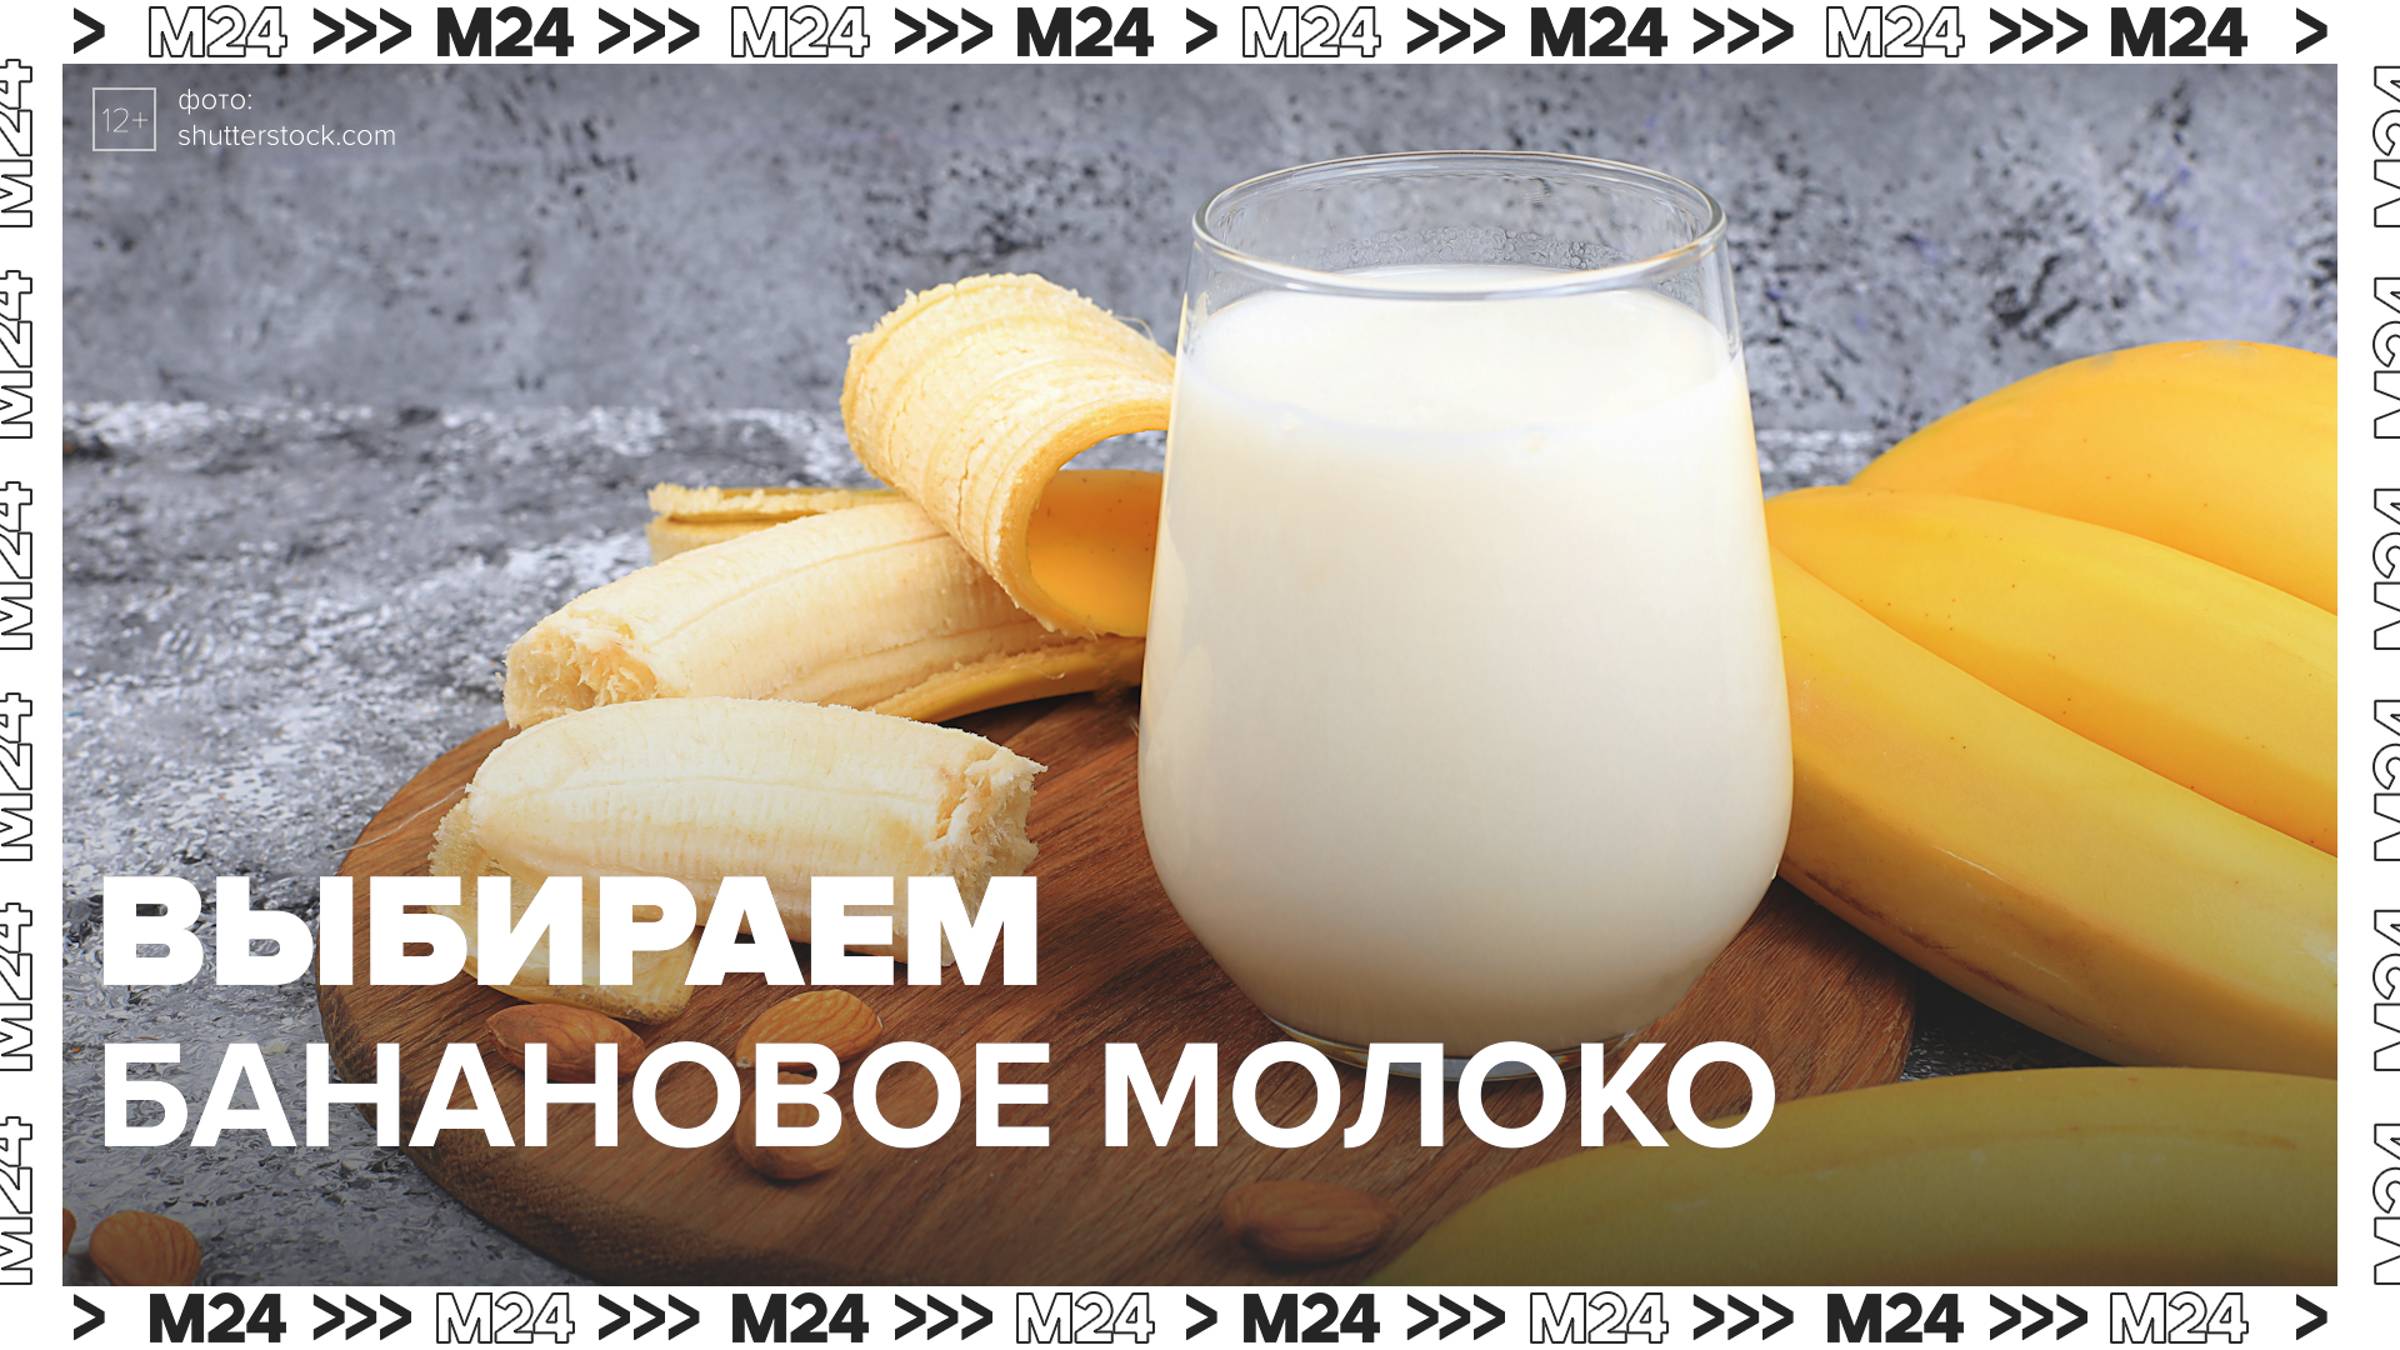 Выбираем банановое молоко — Москва24|Контент